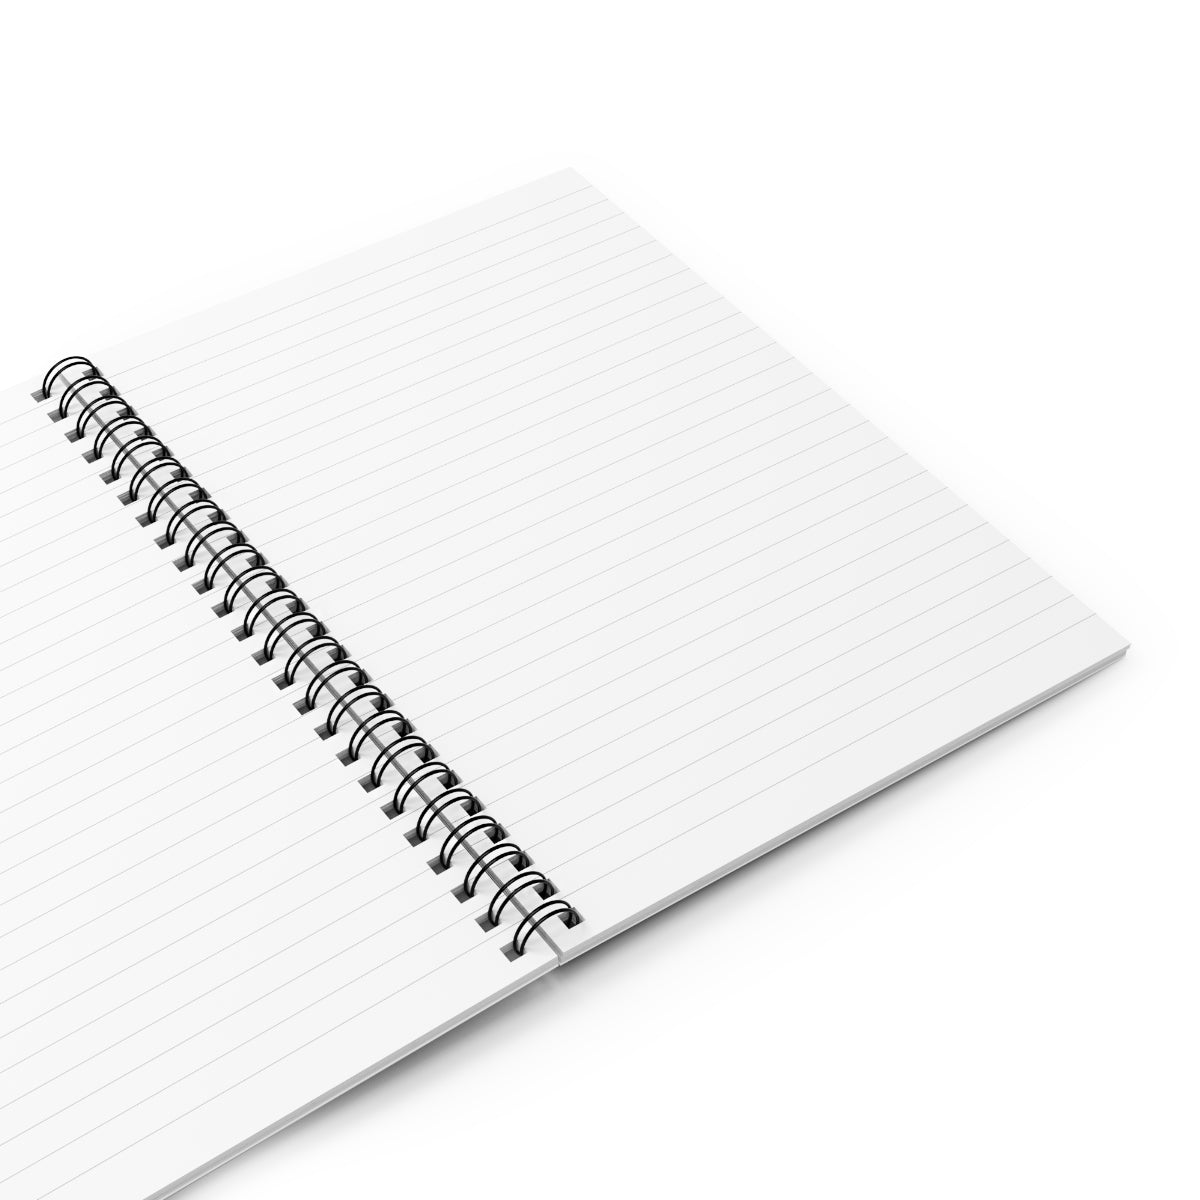 Millbrooke Spiral Notebook - Ruled Line - Live Sandy